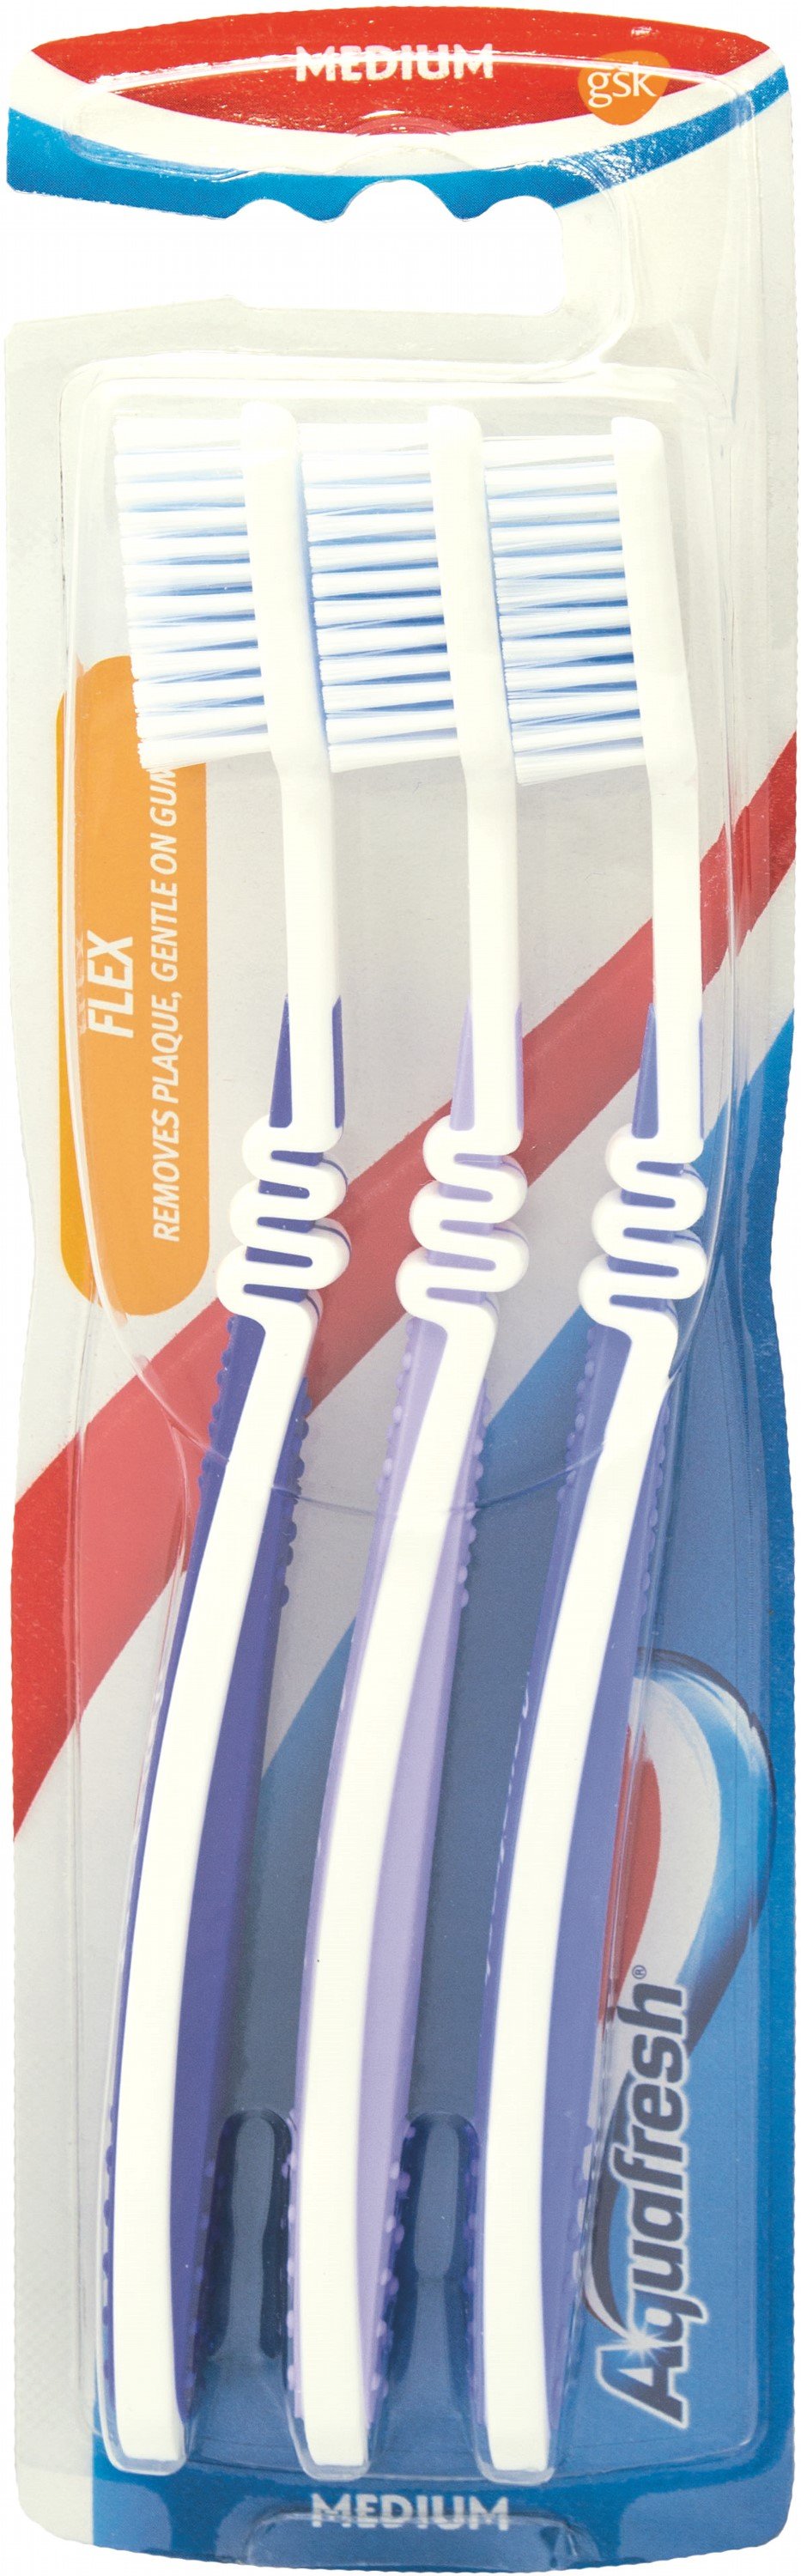 Зубная щетка Aquafresh Flex Medium, средняя, синий, 3 шт. - фото 1